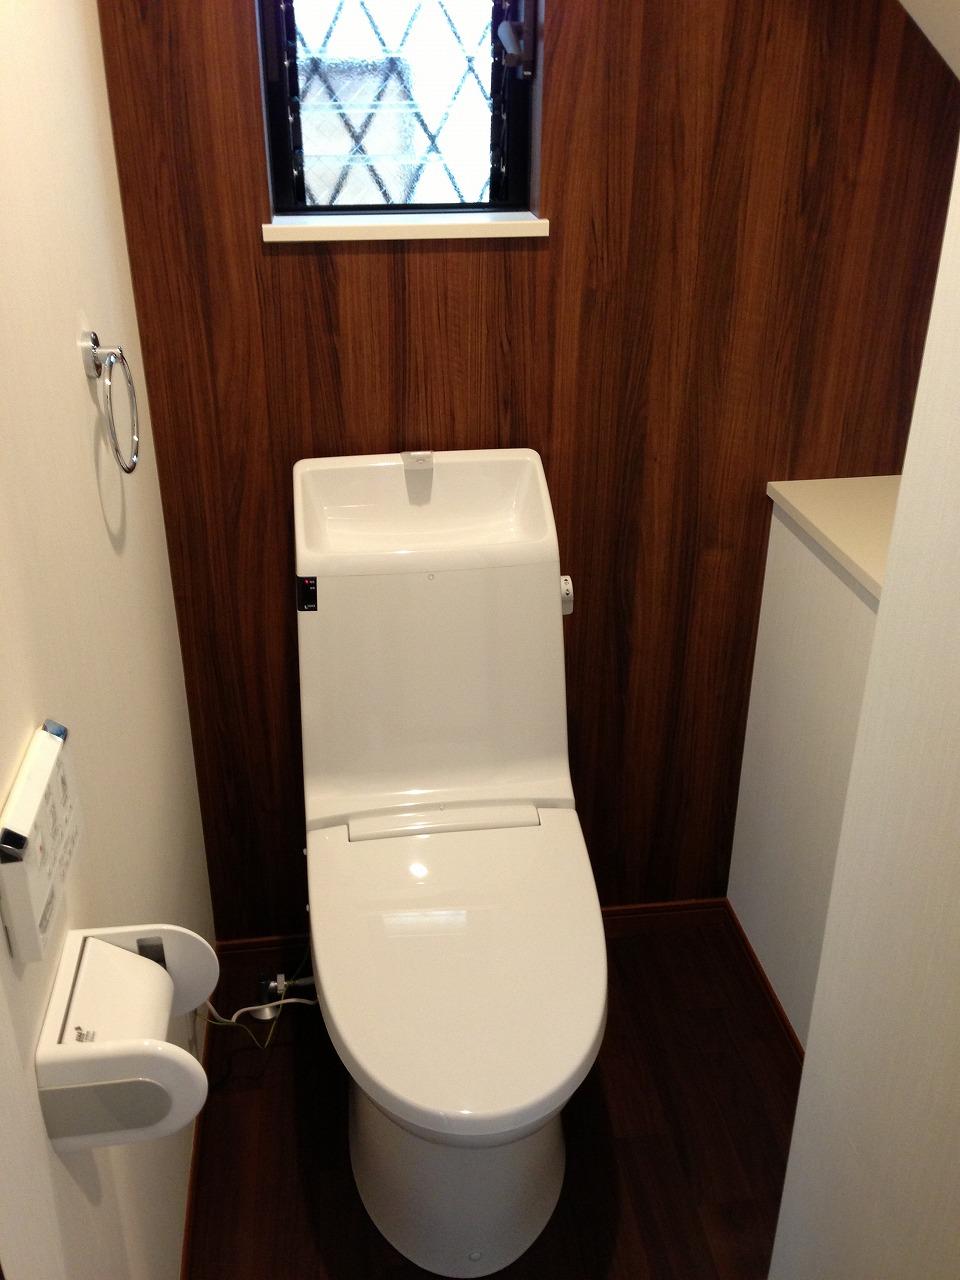 Toilet. High-function toilet